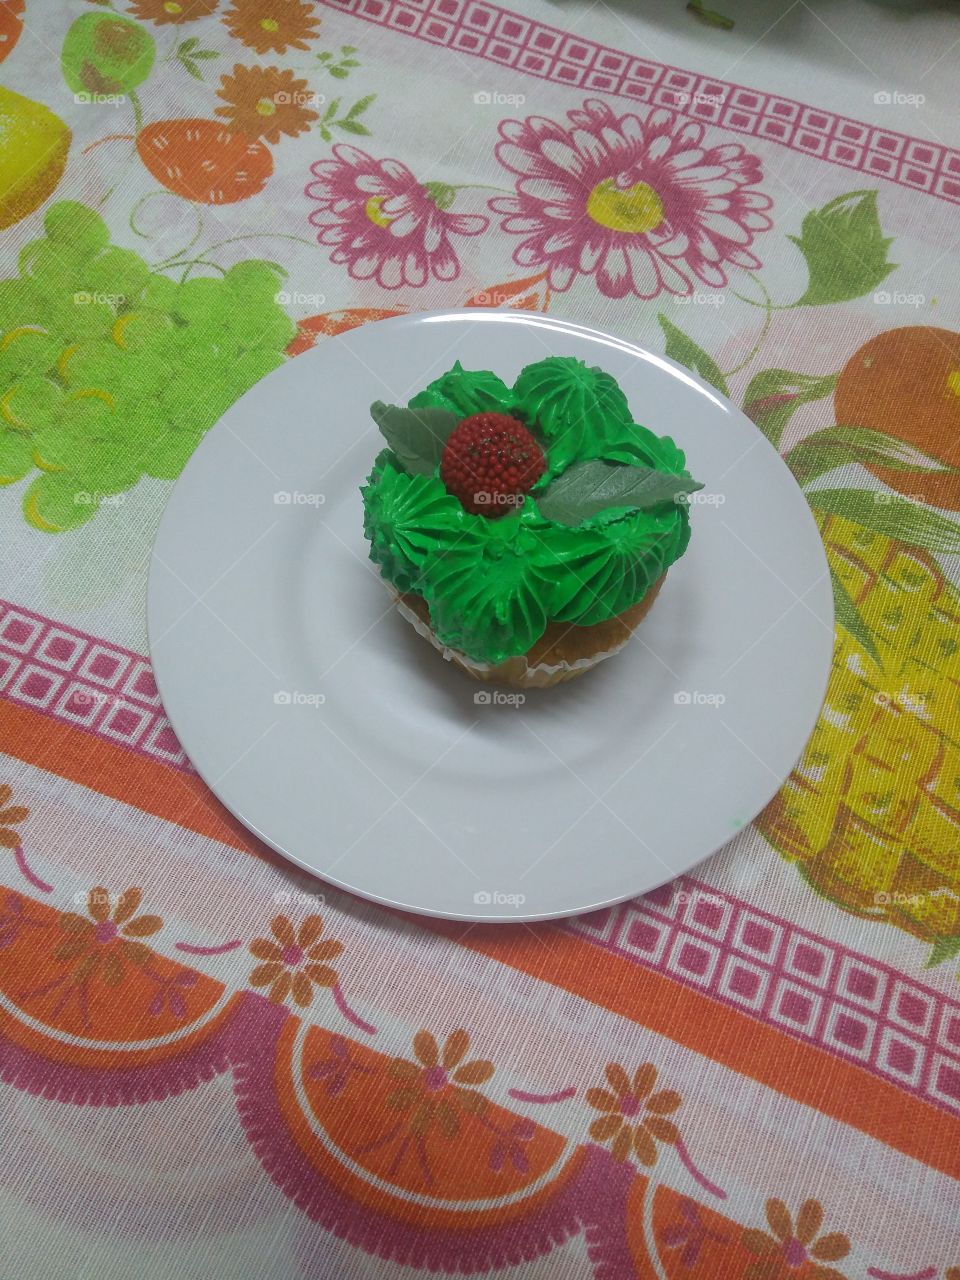 Green Grass cupcake